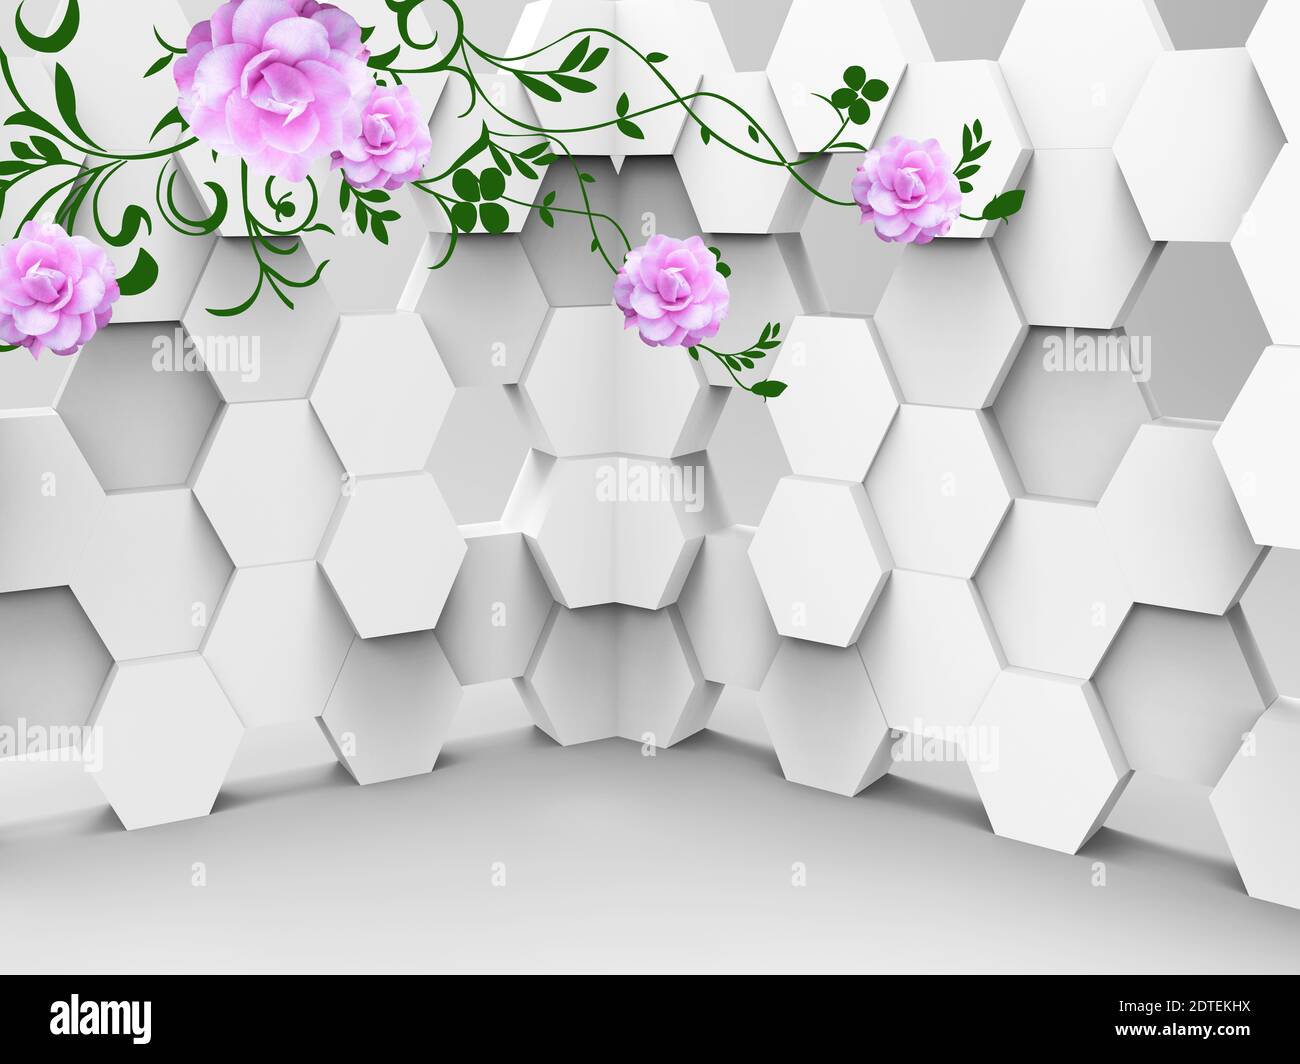 illustrazione 3d, sfondo grigio, esagoni, grandi fiori rosa Foto Stock